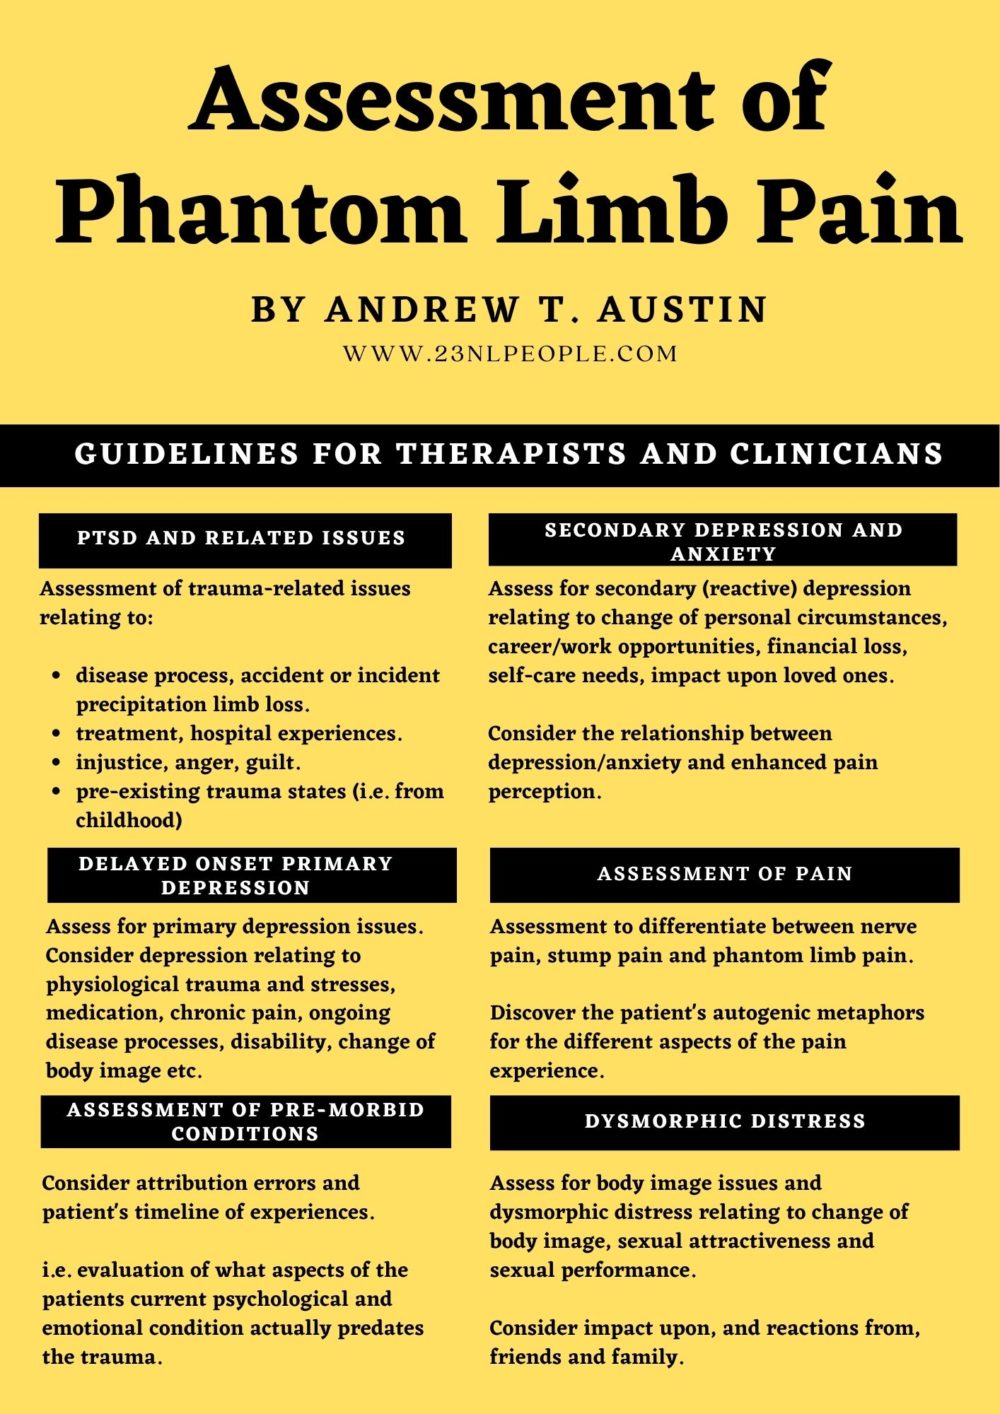 Treatment of Phantom Limb Pain